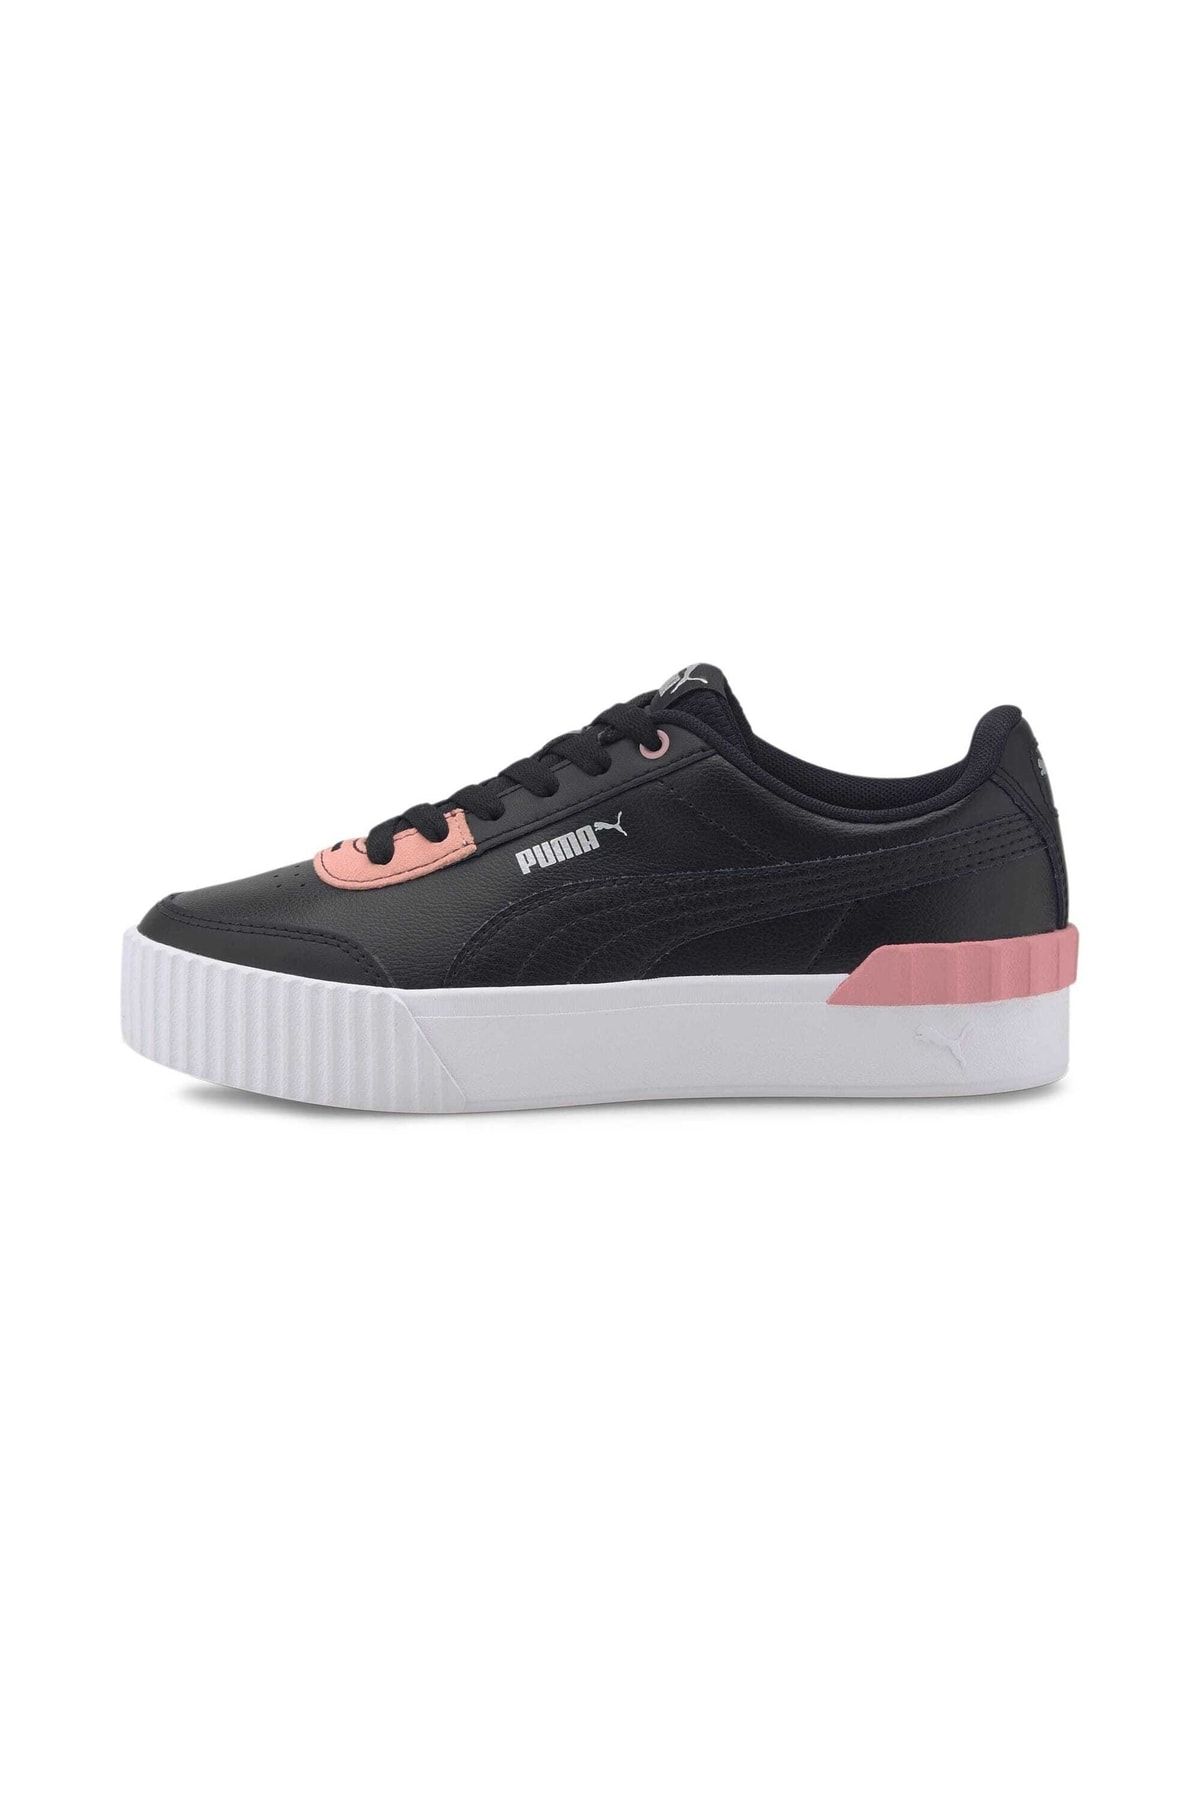 Puma CARINA LIFT Siyah Kadın Sneaker Ayakkabı 101079626